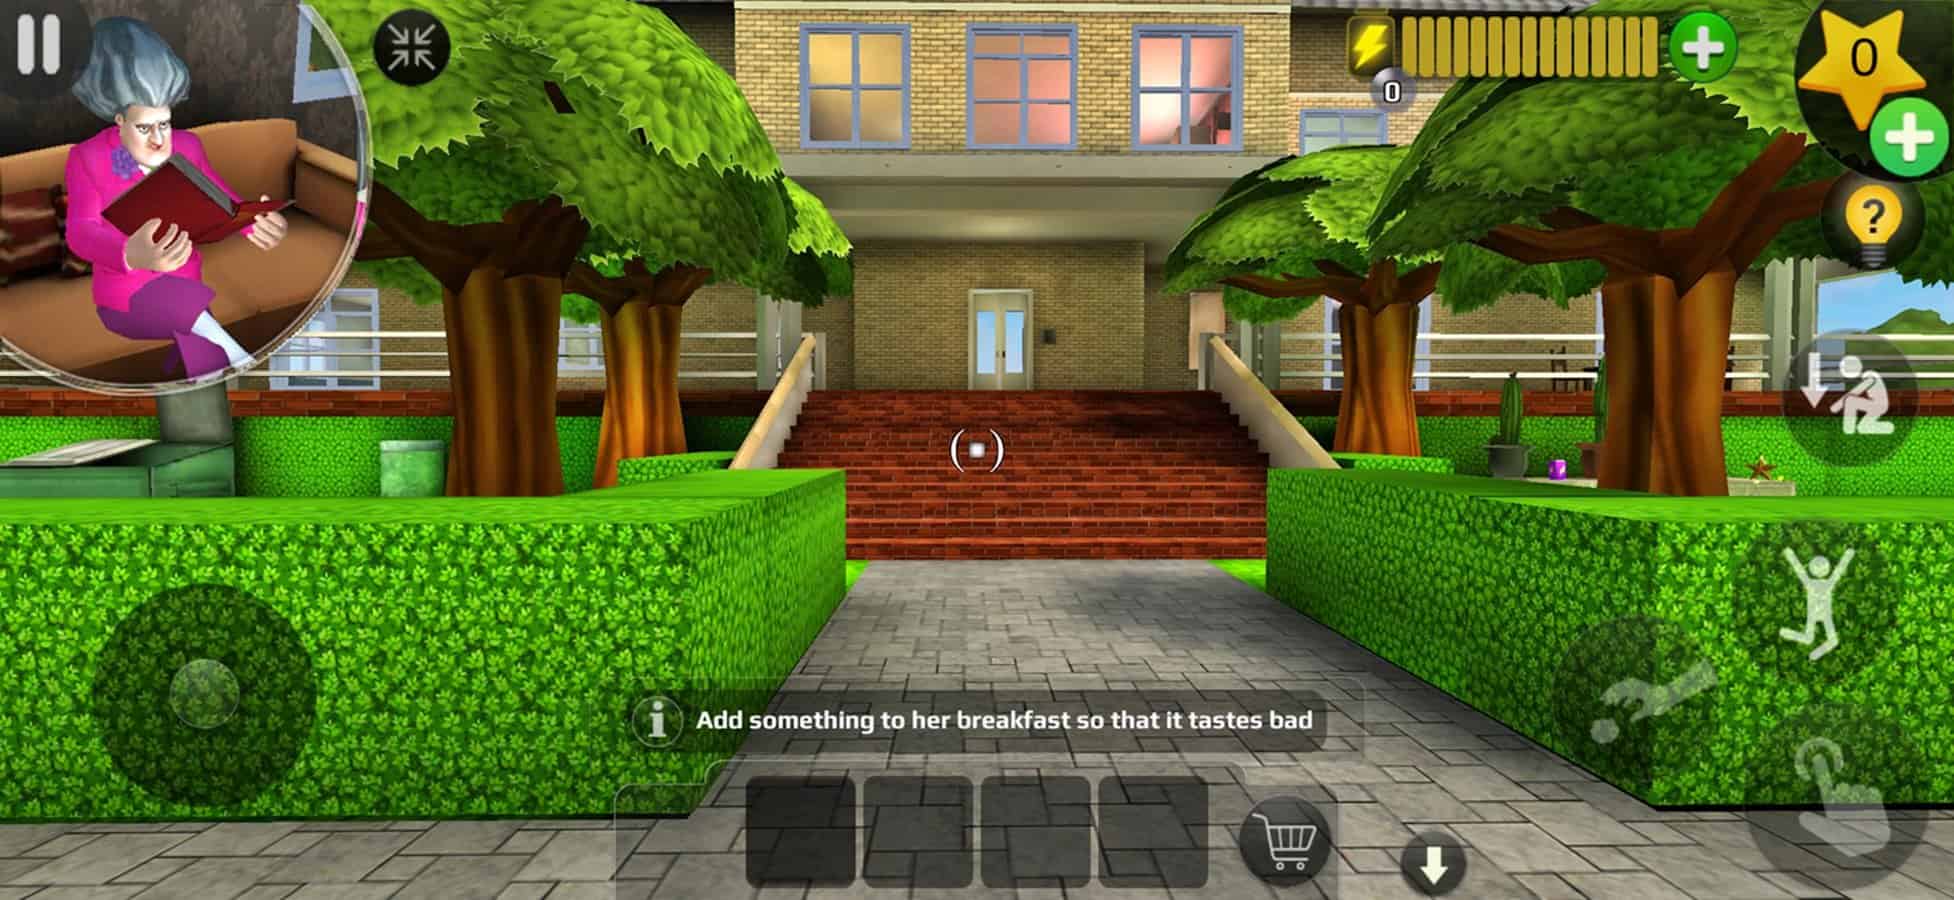 Scary Teacher 3D Mal Escola na App Store